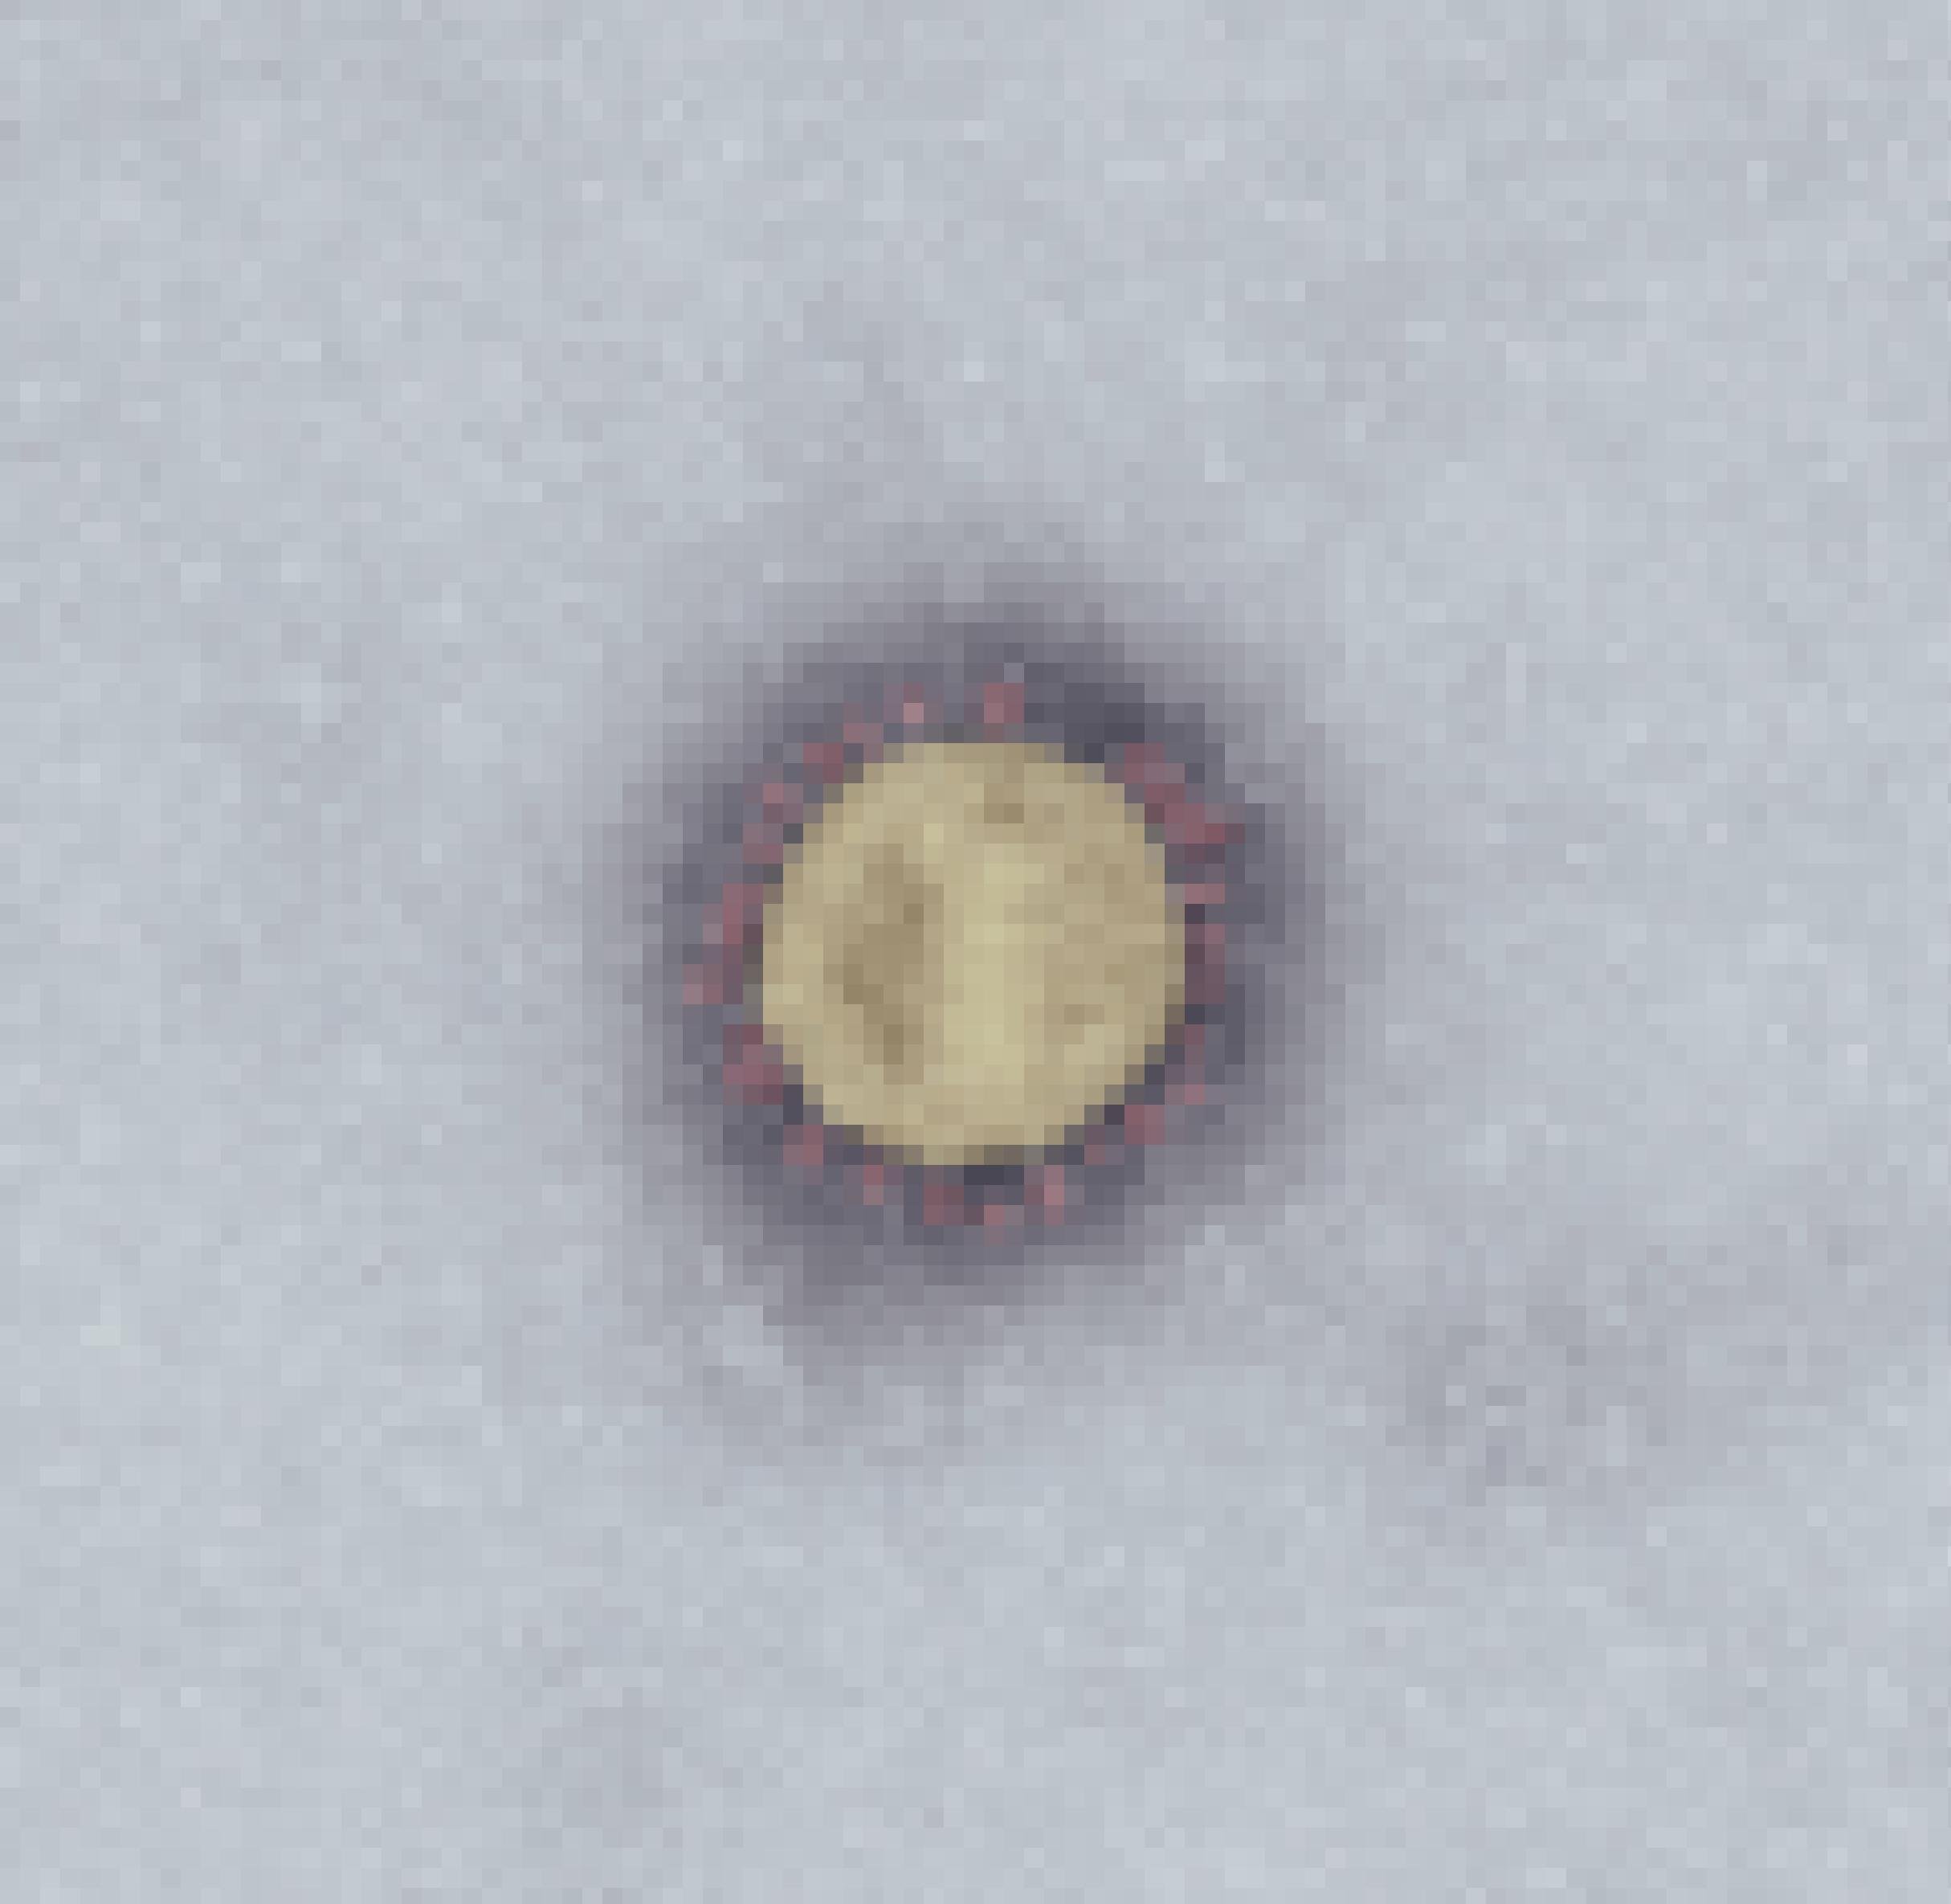 Ein gelblicher Kreis, am Rand umgeben von kleinen blassroten Anhängseln – so stellt sich das Coronavirus (Covid-19) in der elektronenmikroskopischen Aufnahme des Robert Koch-Instituts dar. Solche Aufnahmen ermöglichen es, in Probematerial von Patienten das Virus aufzuspüren und zu identifizieren.